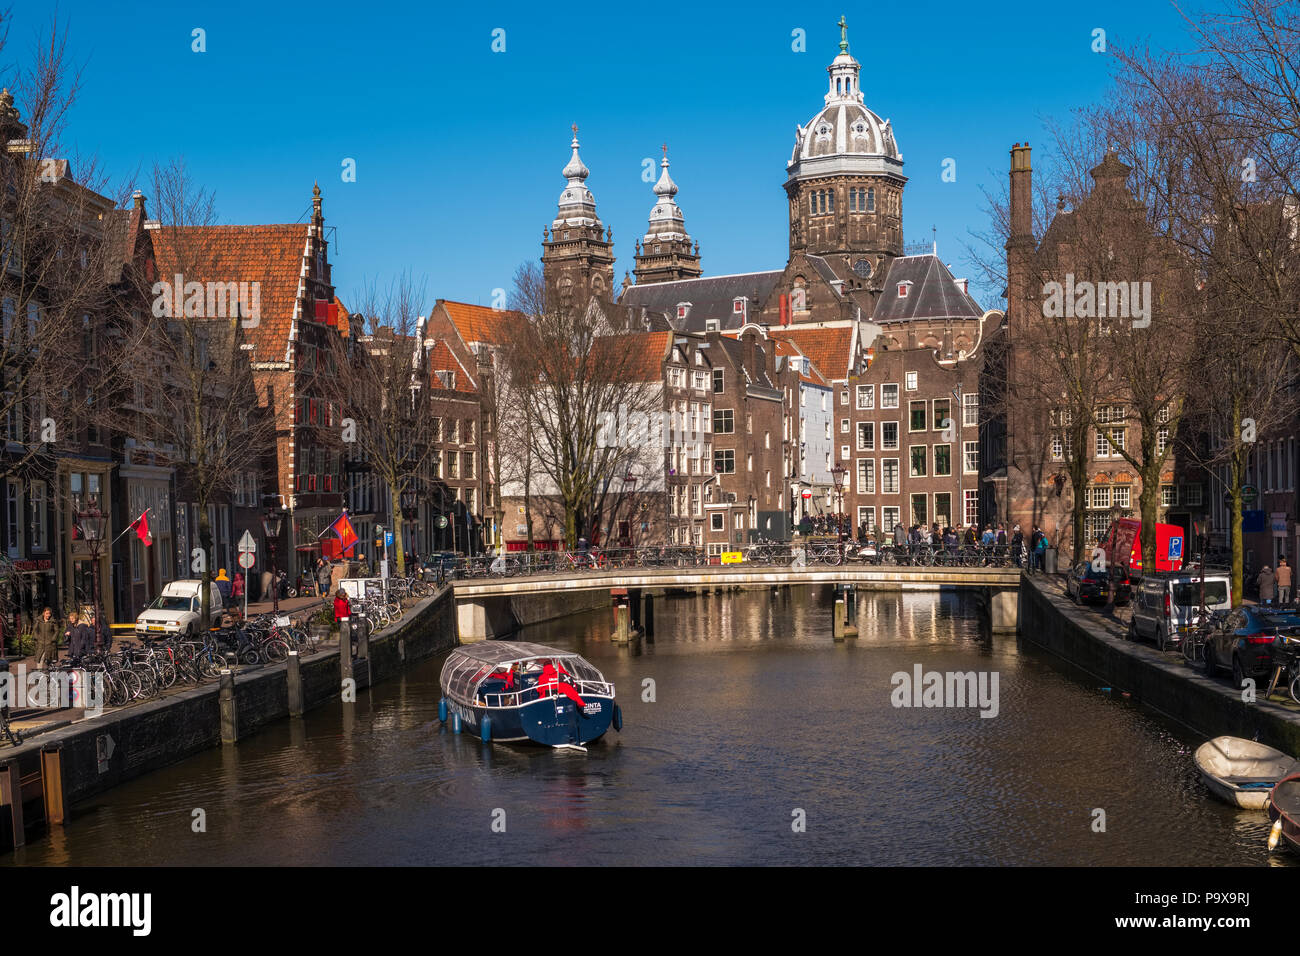 Nombreux vélos sur un pont surplombant un canal à Amsterdam, Pays-Bas, Europe avec un plaisir de la voile en dessous Banque D'Images